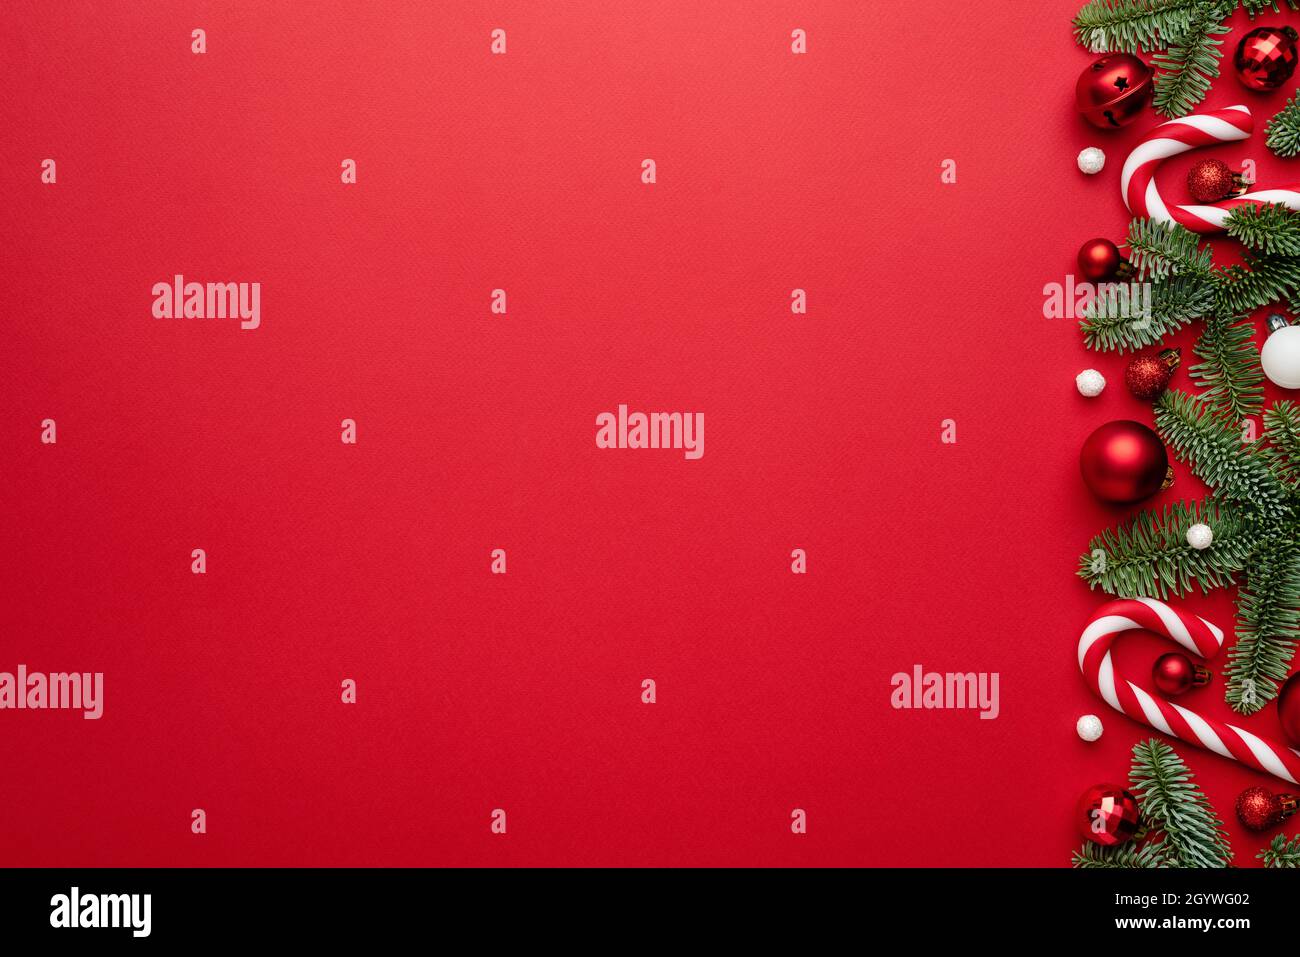 Arrière-plan rouge avec bordure de Noël, boules de Noël, et une canne à sucre pour le motif de Noël.Vide avec un espace de copie pour le texte Banque D'Images